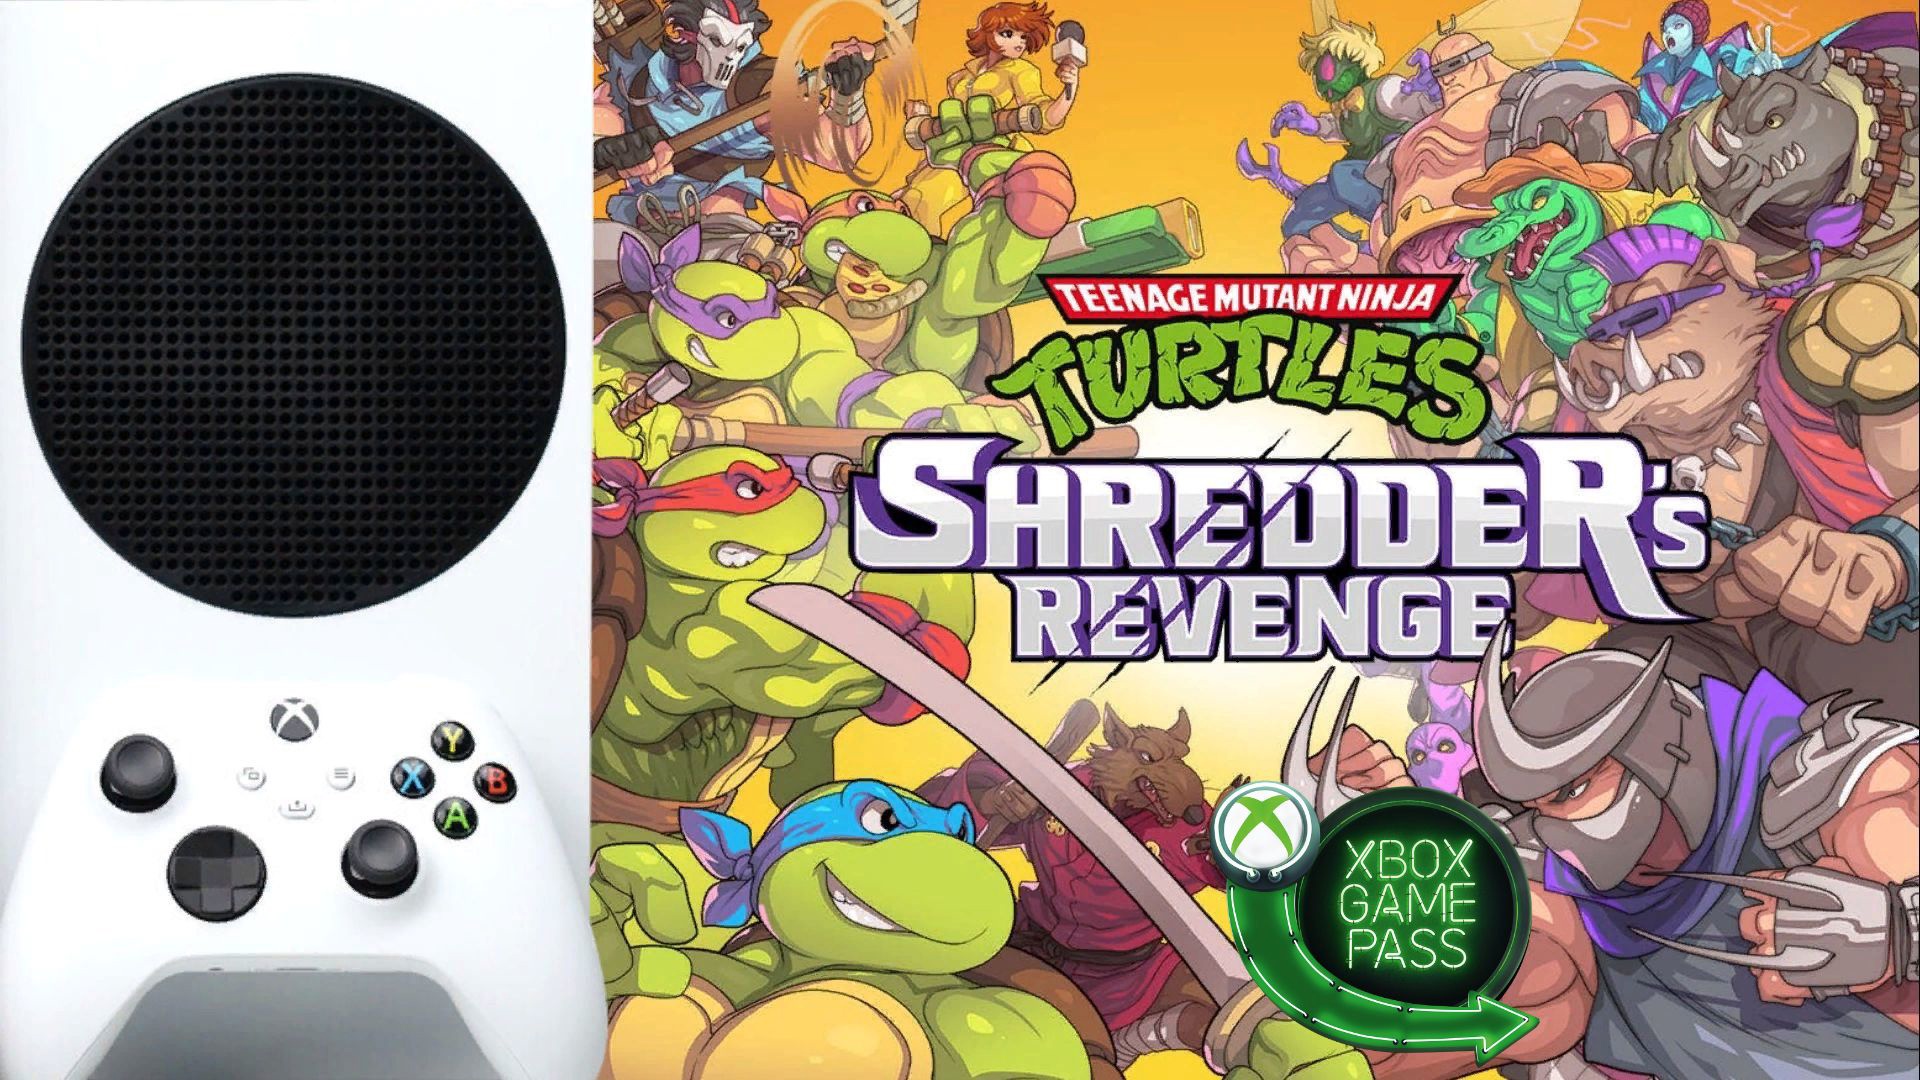 Черепашки ниндзя Xbox. Черепашки ниндзя 2023. TMNT Shredder Revenge супер шредер. TMNT Shredder Revenge Dimension Shellshock.